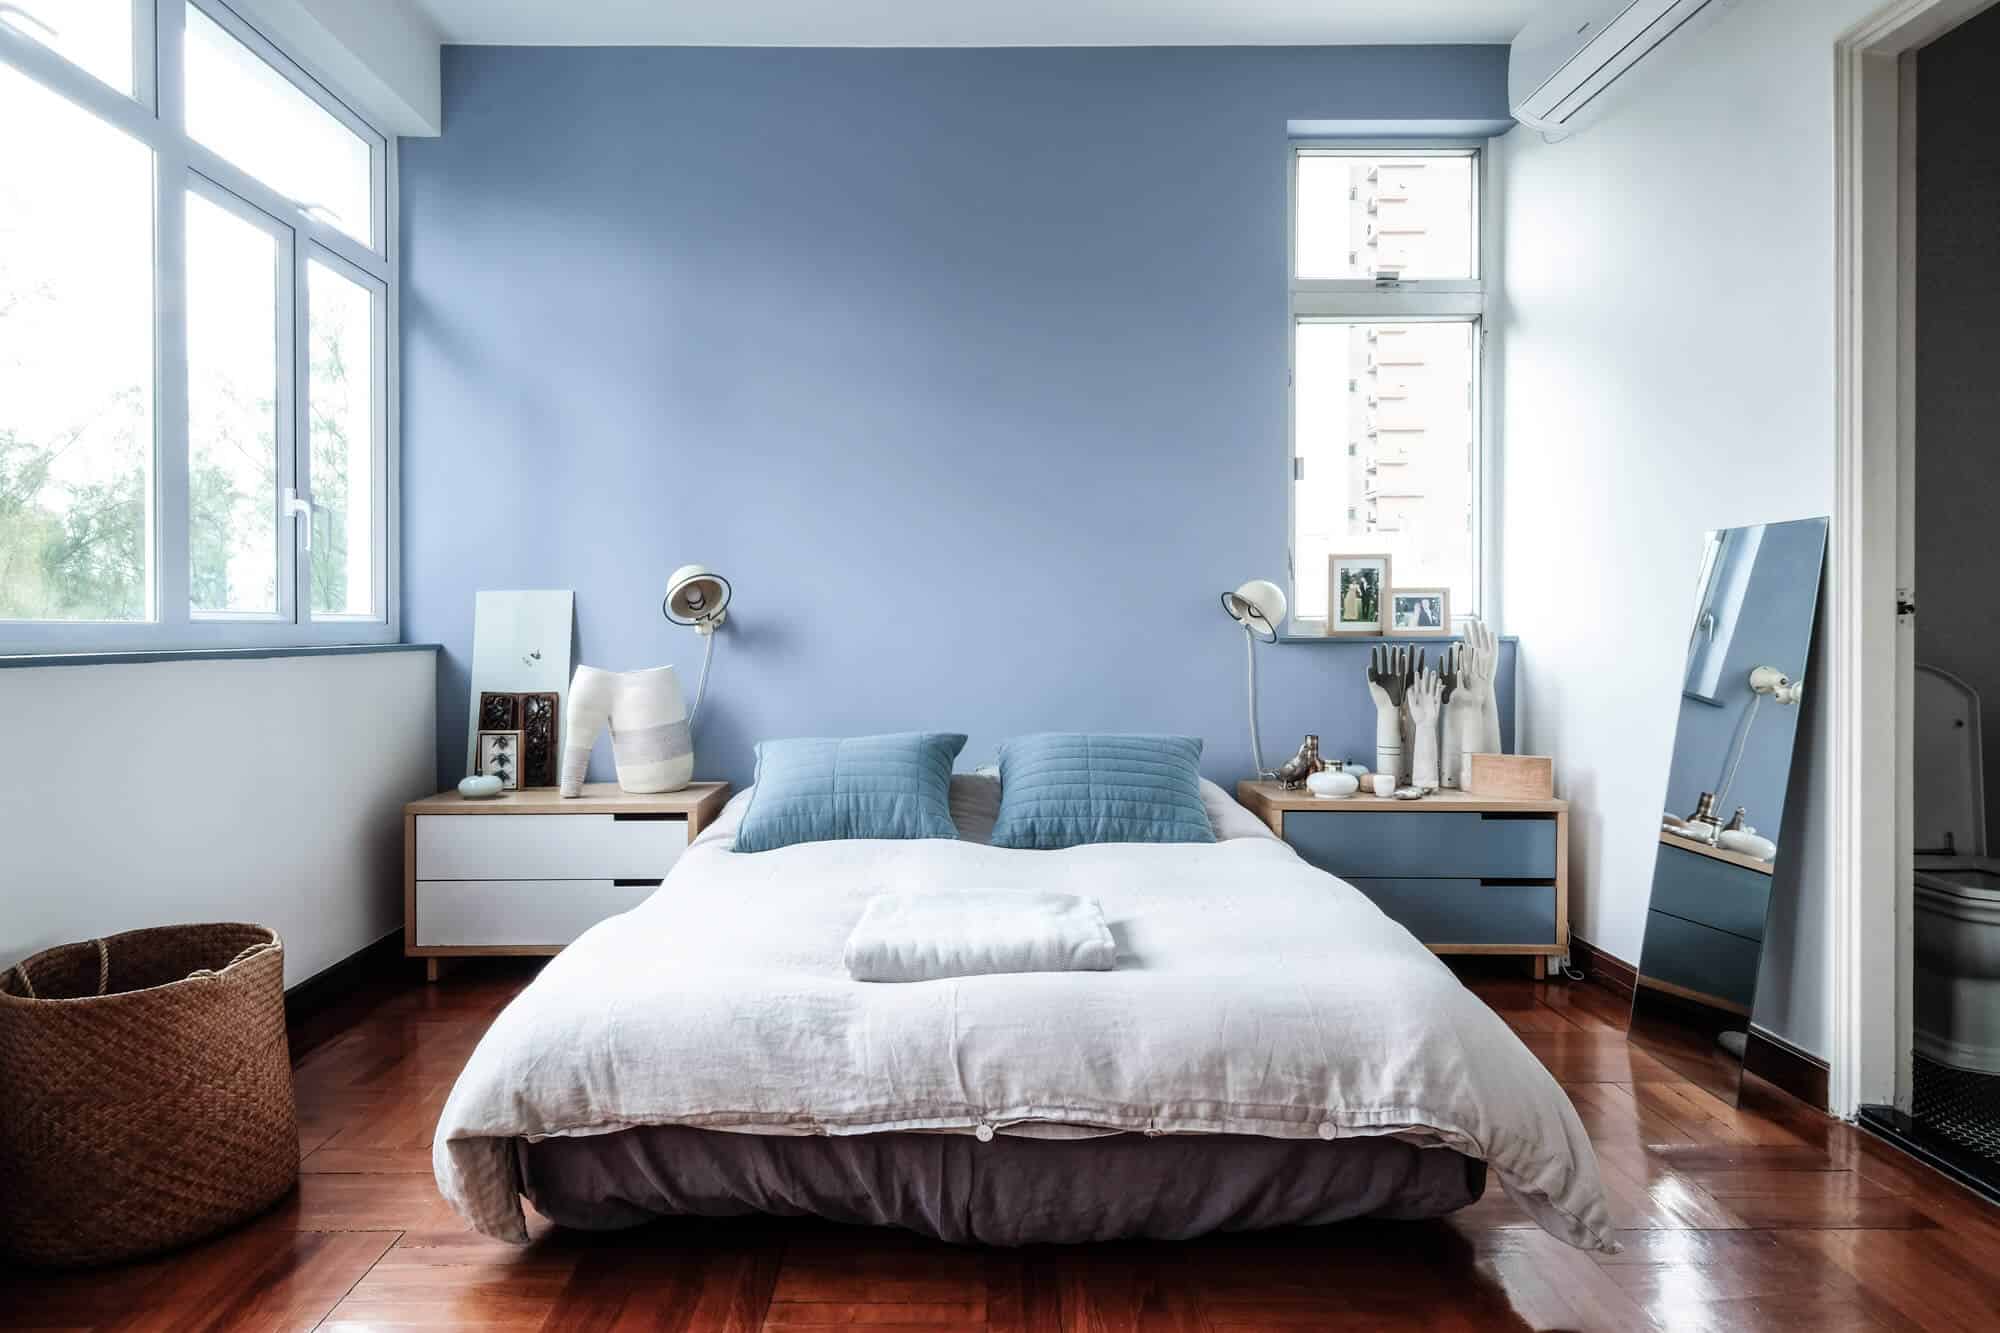  sơn màu xanh phòng ngủ